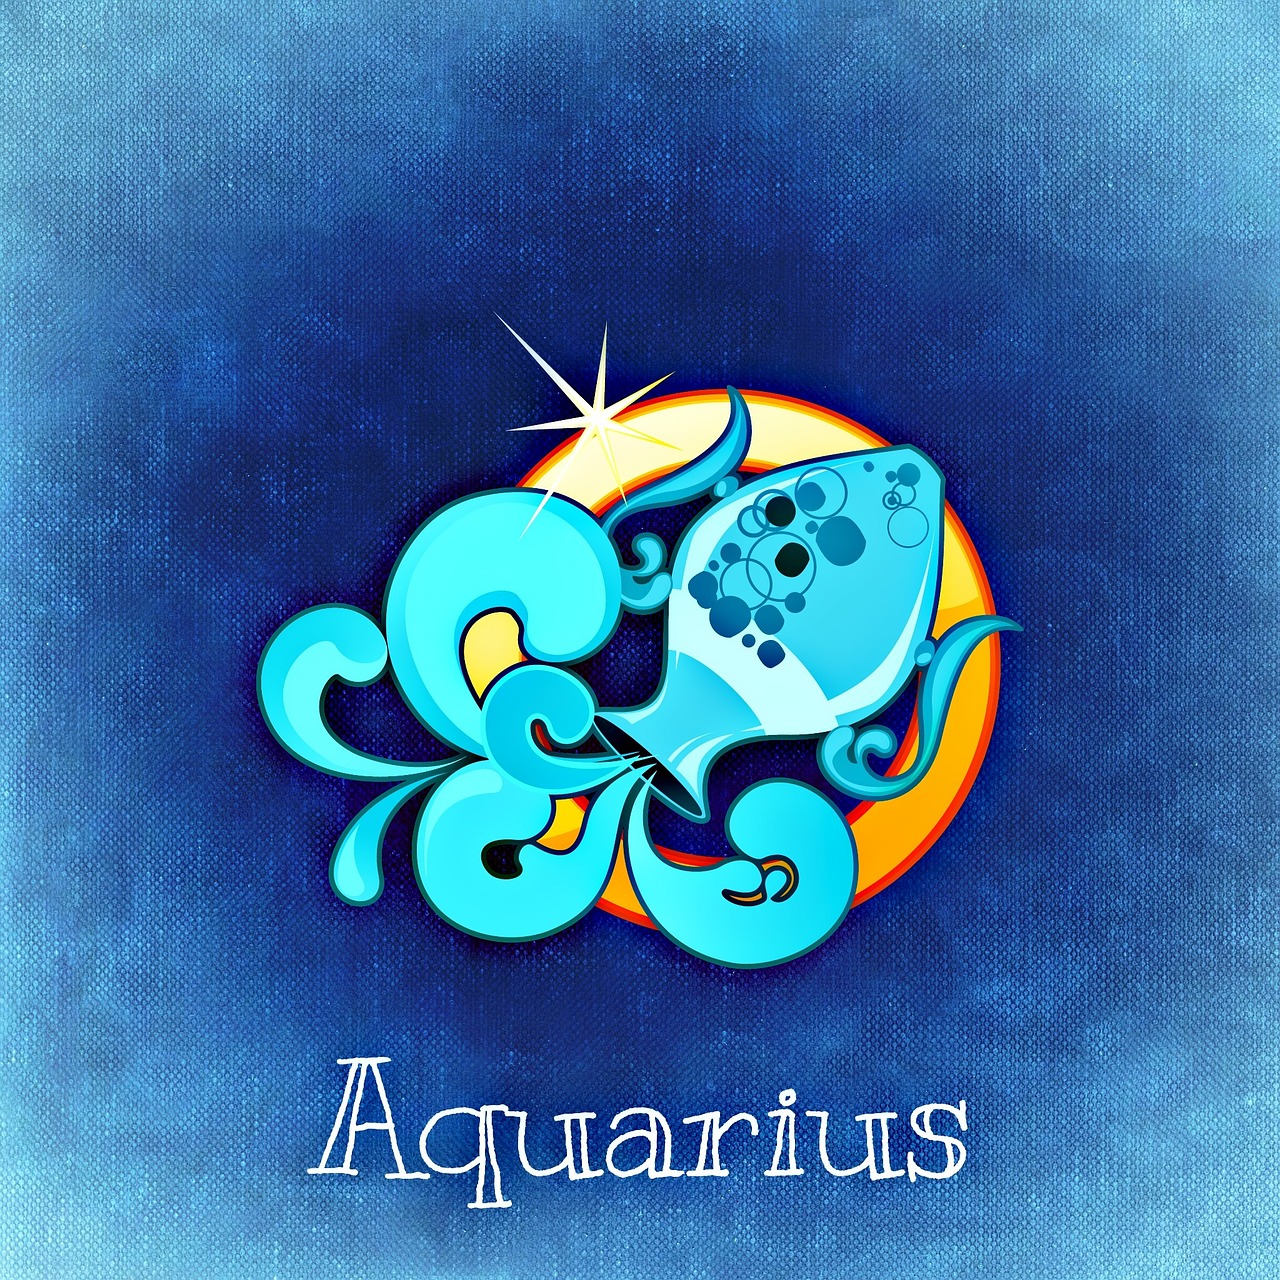 aquarius-gfe009ed78_1280